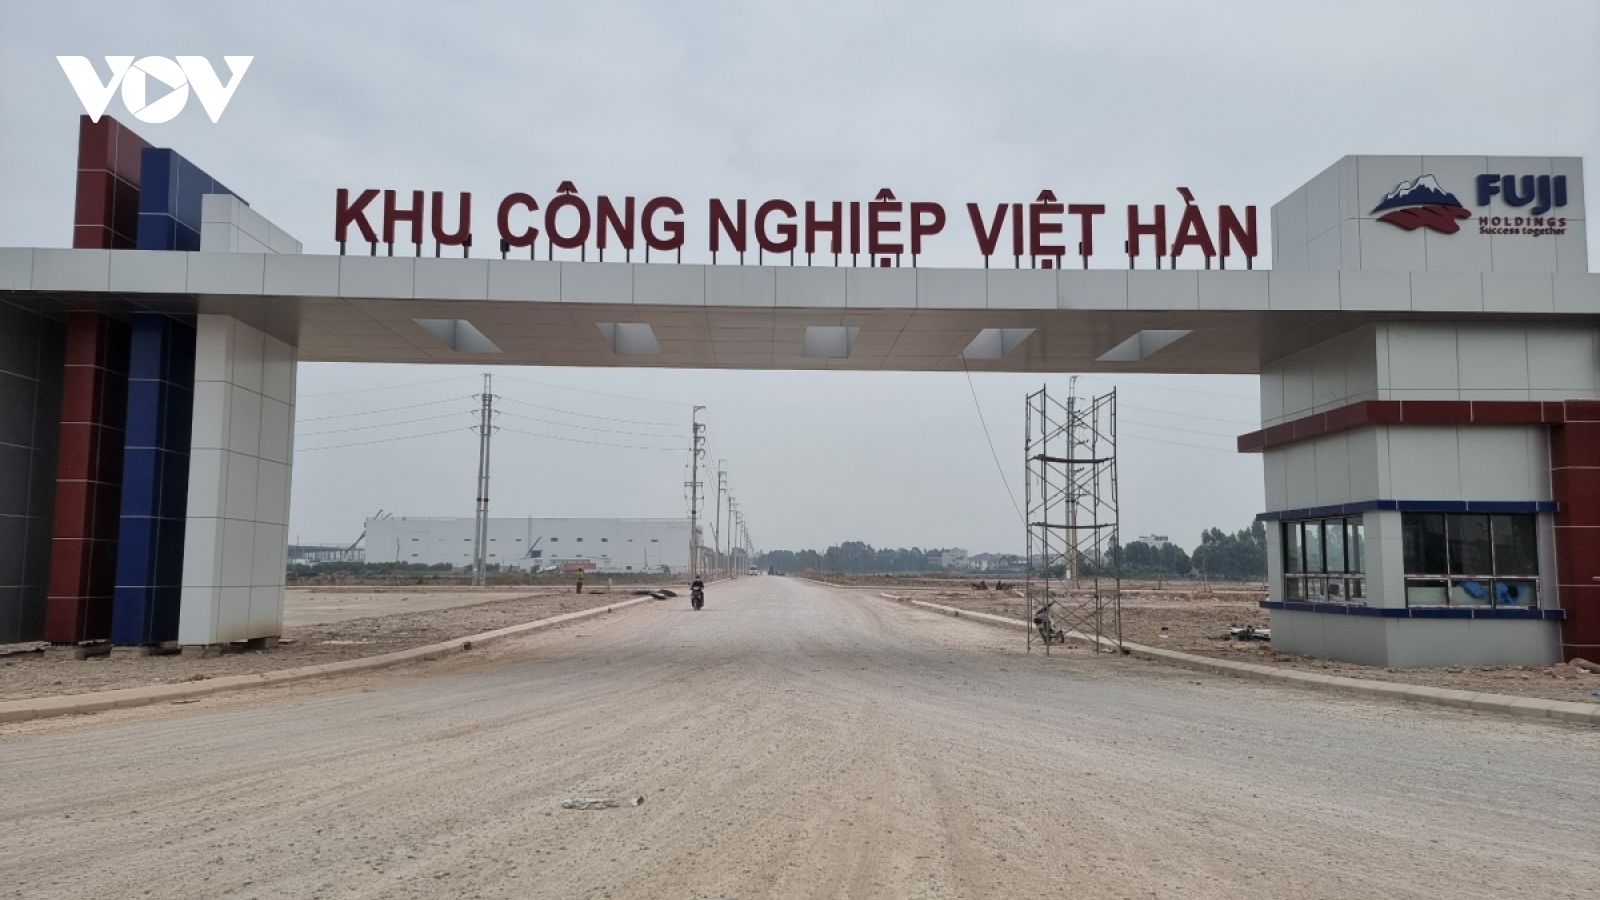 Điều gì khiến Bắc Giang trở thành "đầu tàu" thu hút vốn FDI của cả nước?